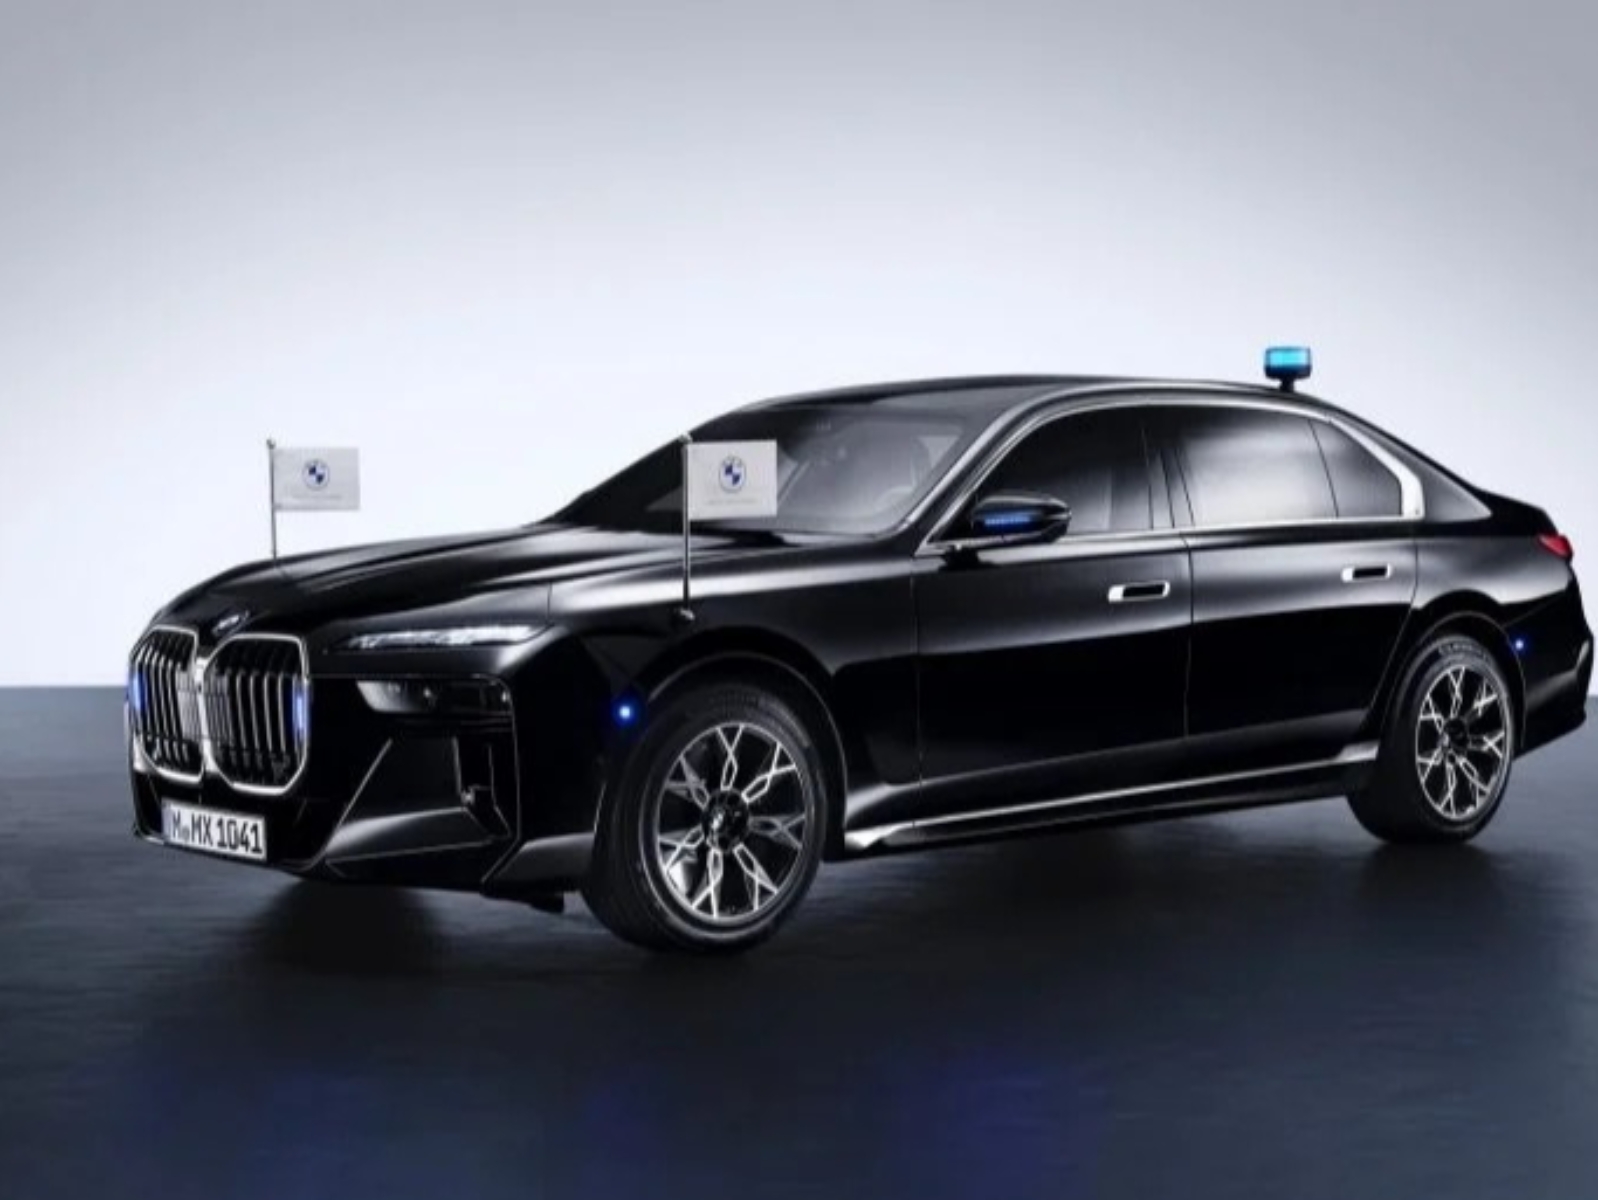 BMW i7 Protection 電動裝甲車引熱議！鋼材車身、防彈玻璃⋯車款亮點全解析！